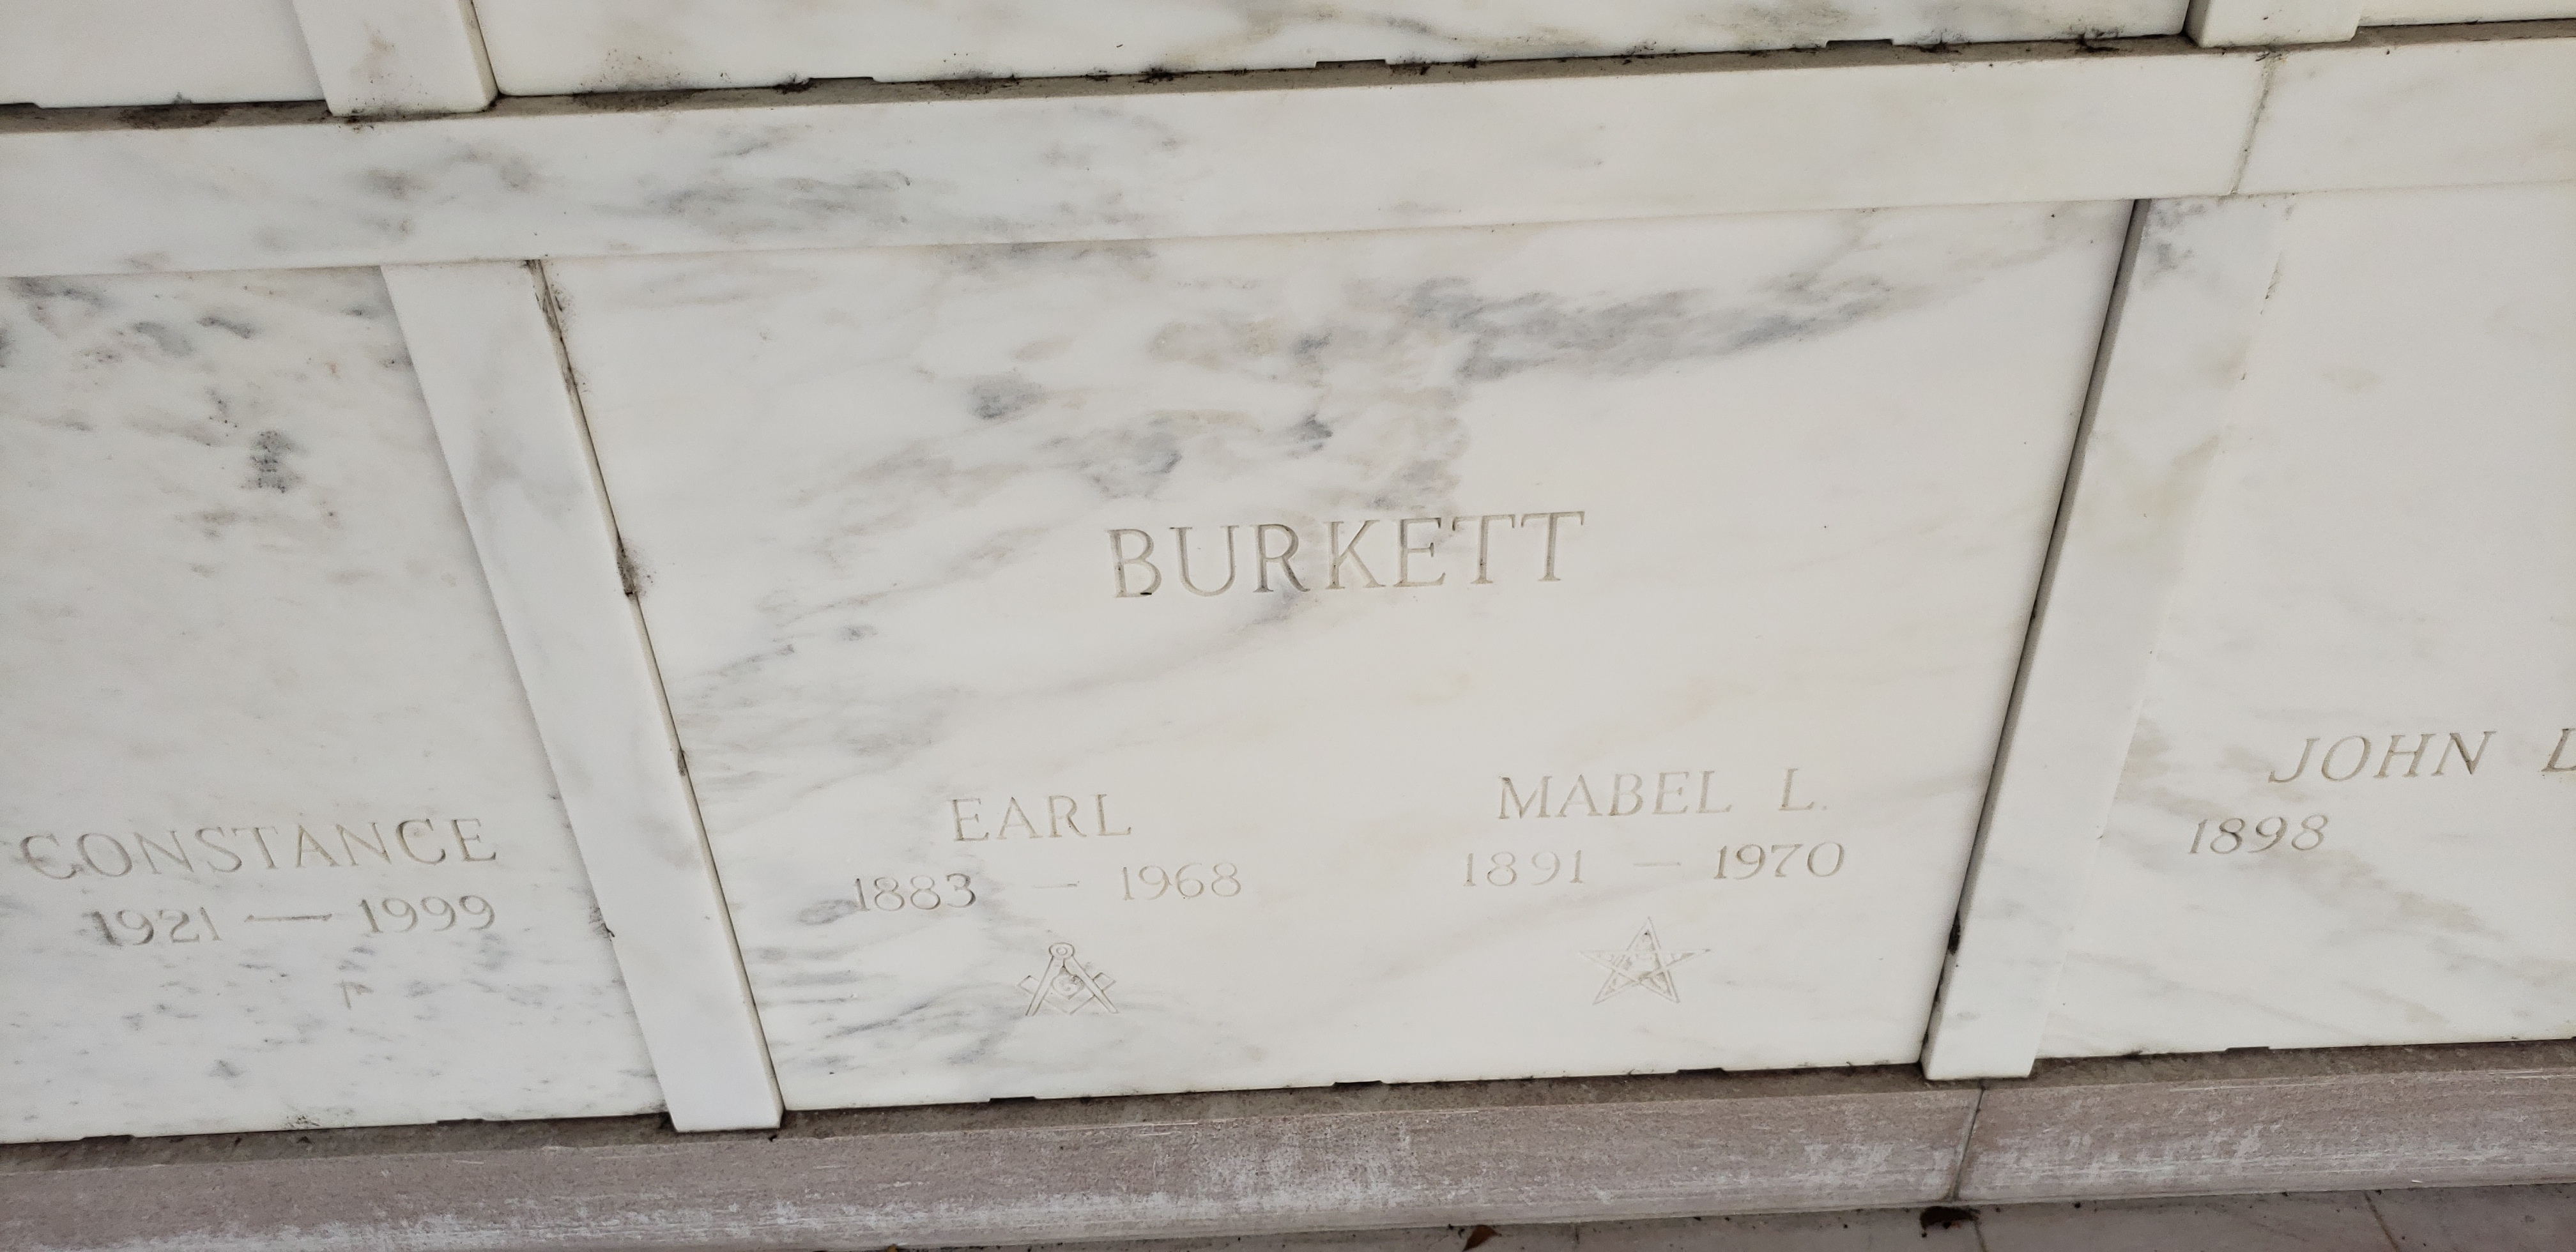 Earl Burkett